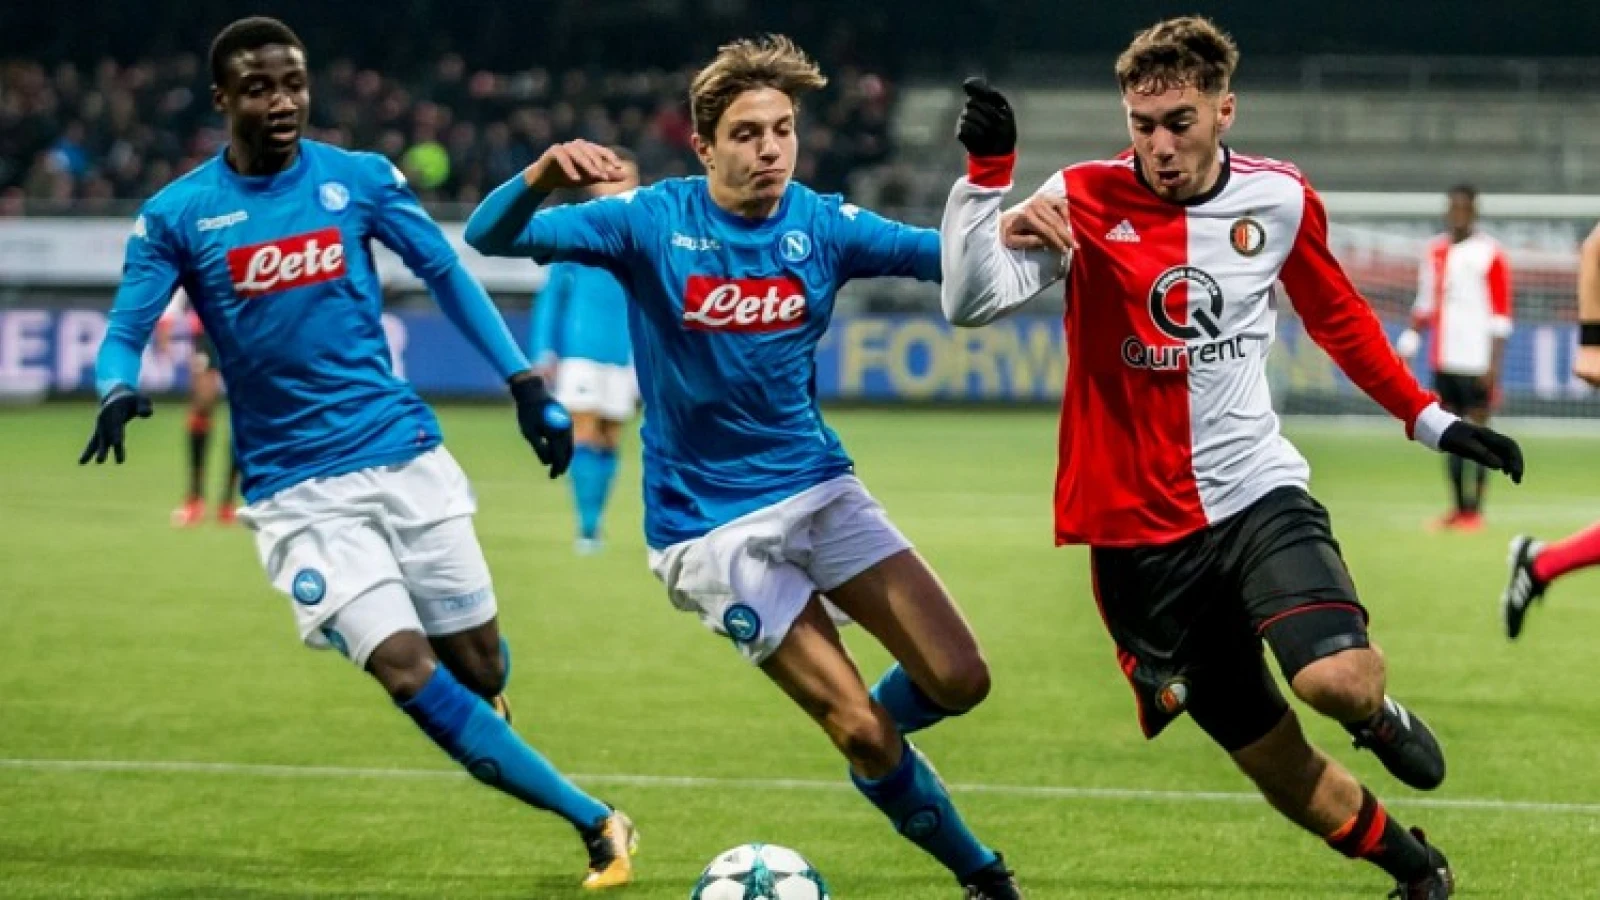 Talentvolle jeugdspeler mag zich bewijzen bij Feyenoord